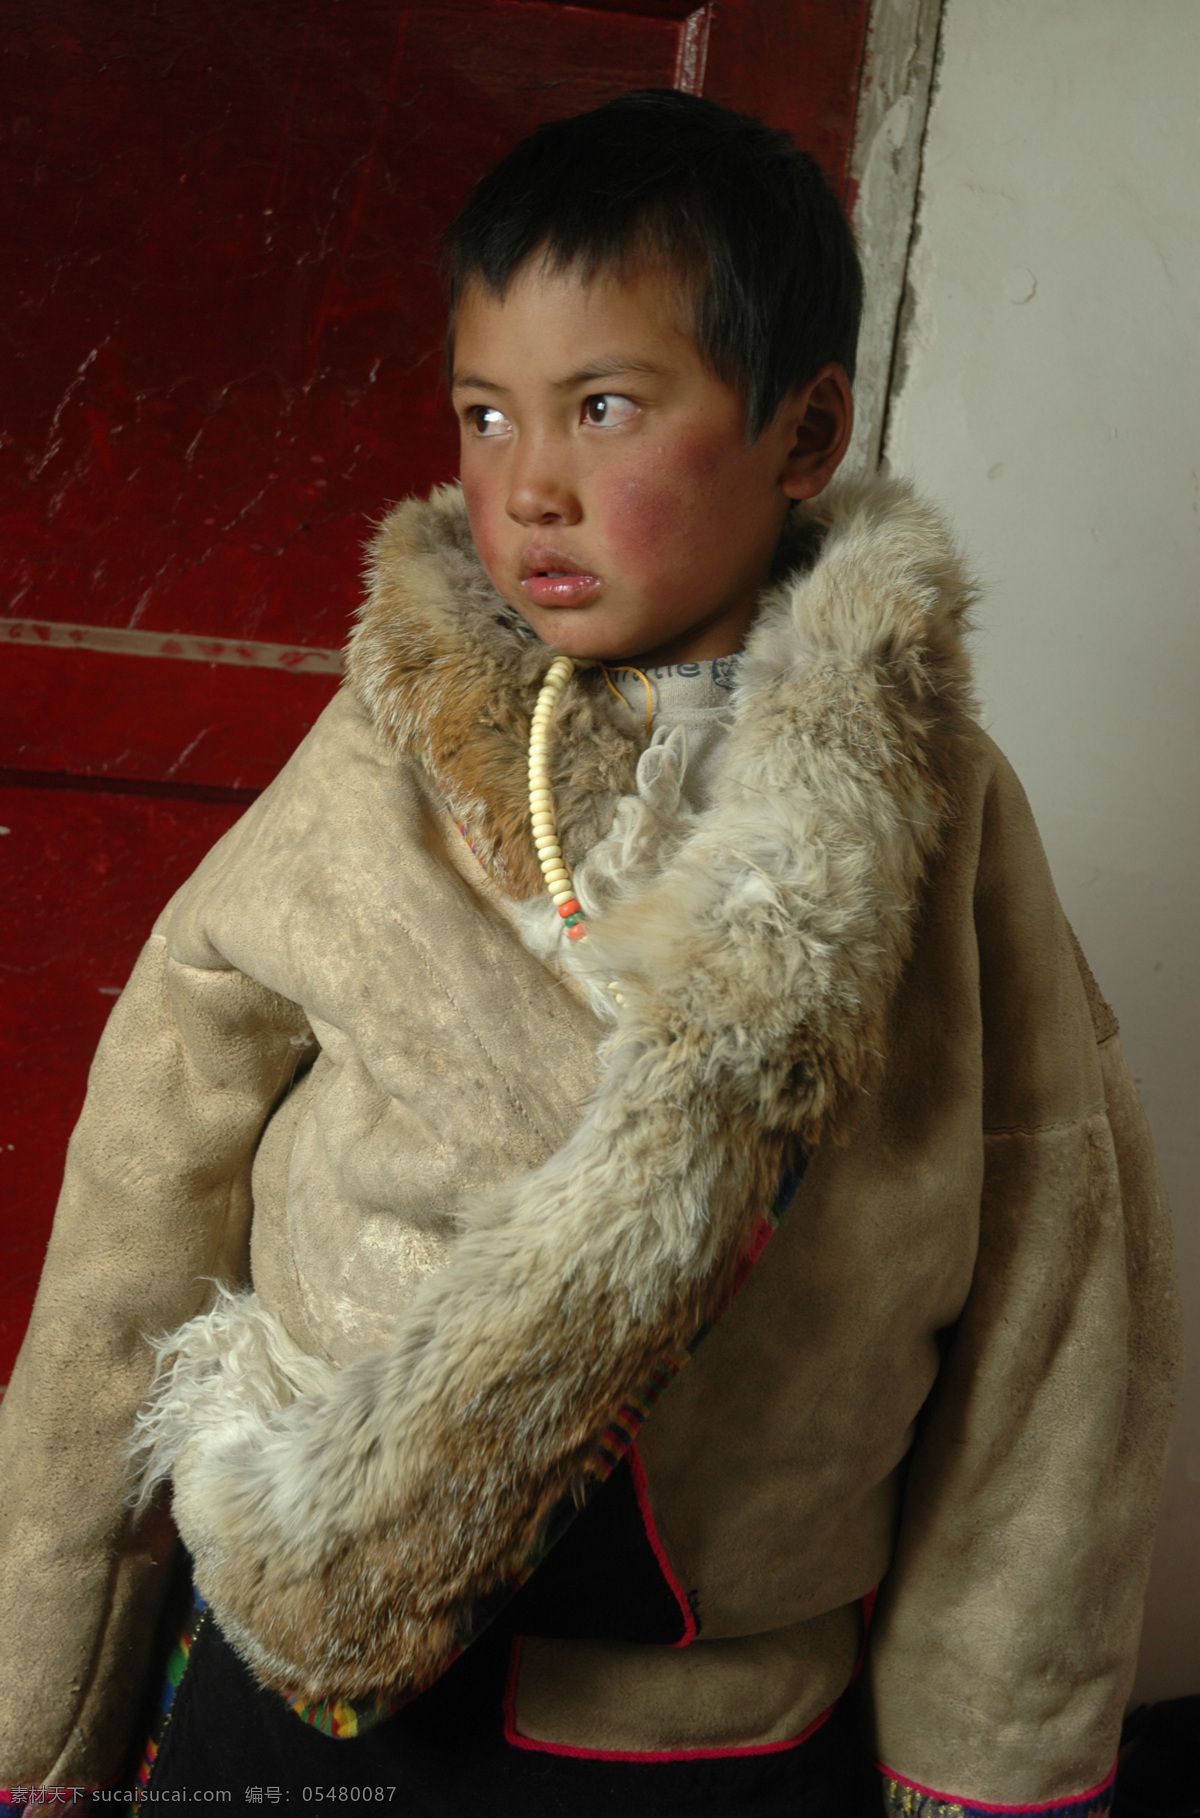 藏族少年 藏族 少年 少数民族 藏族风情 日常生活 人物图库